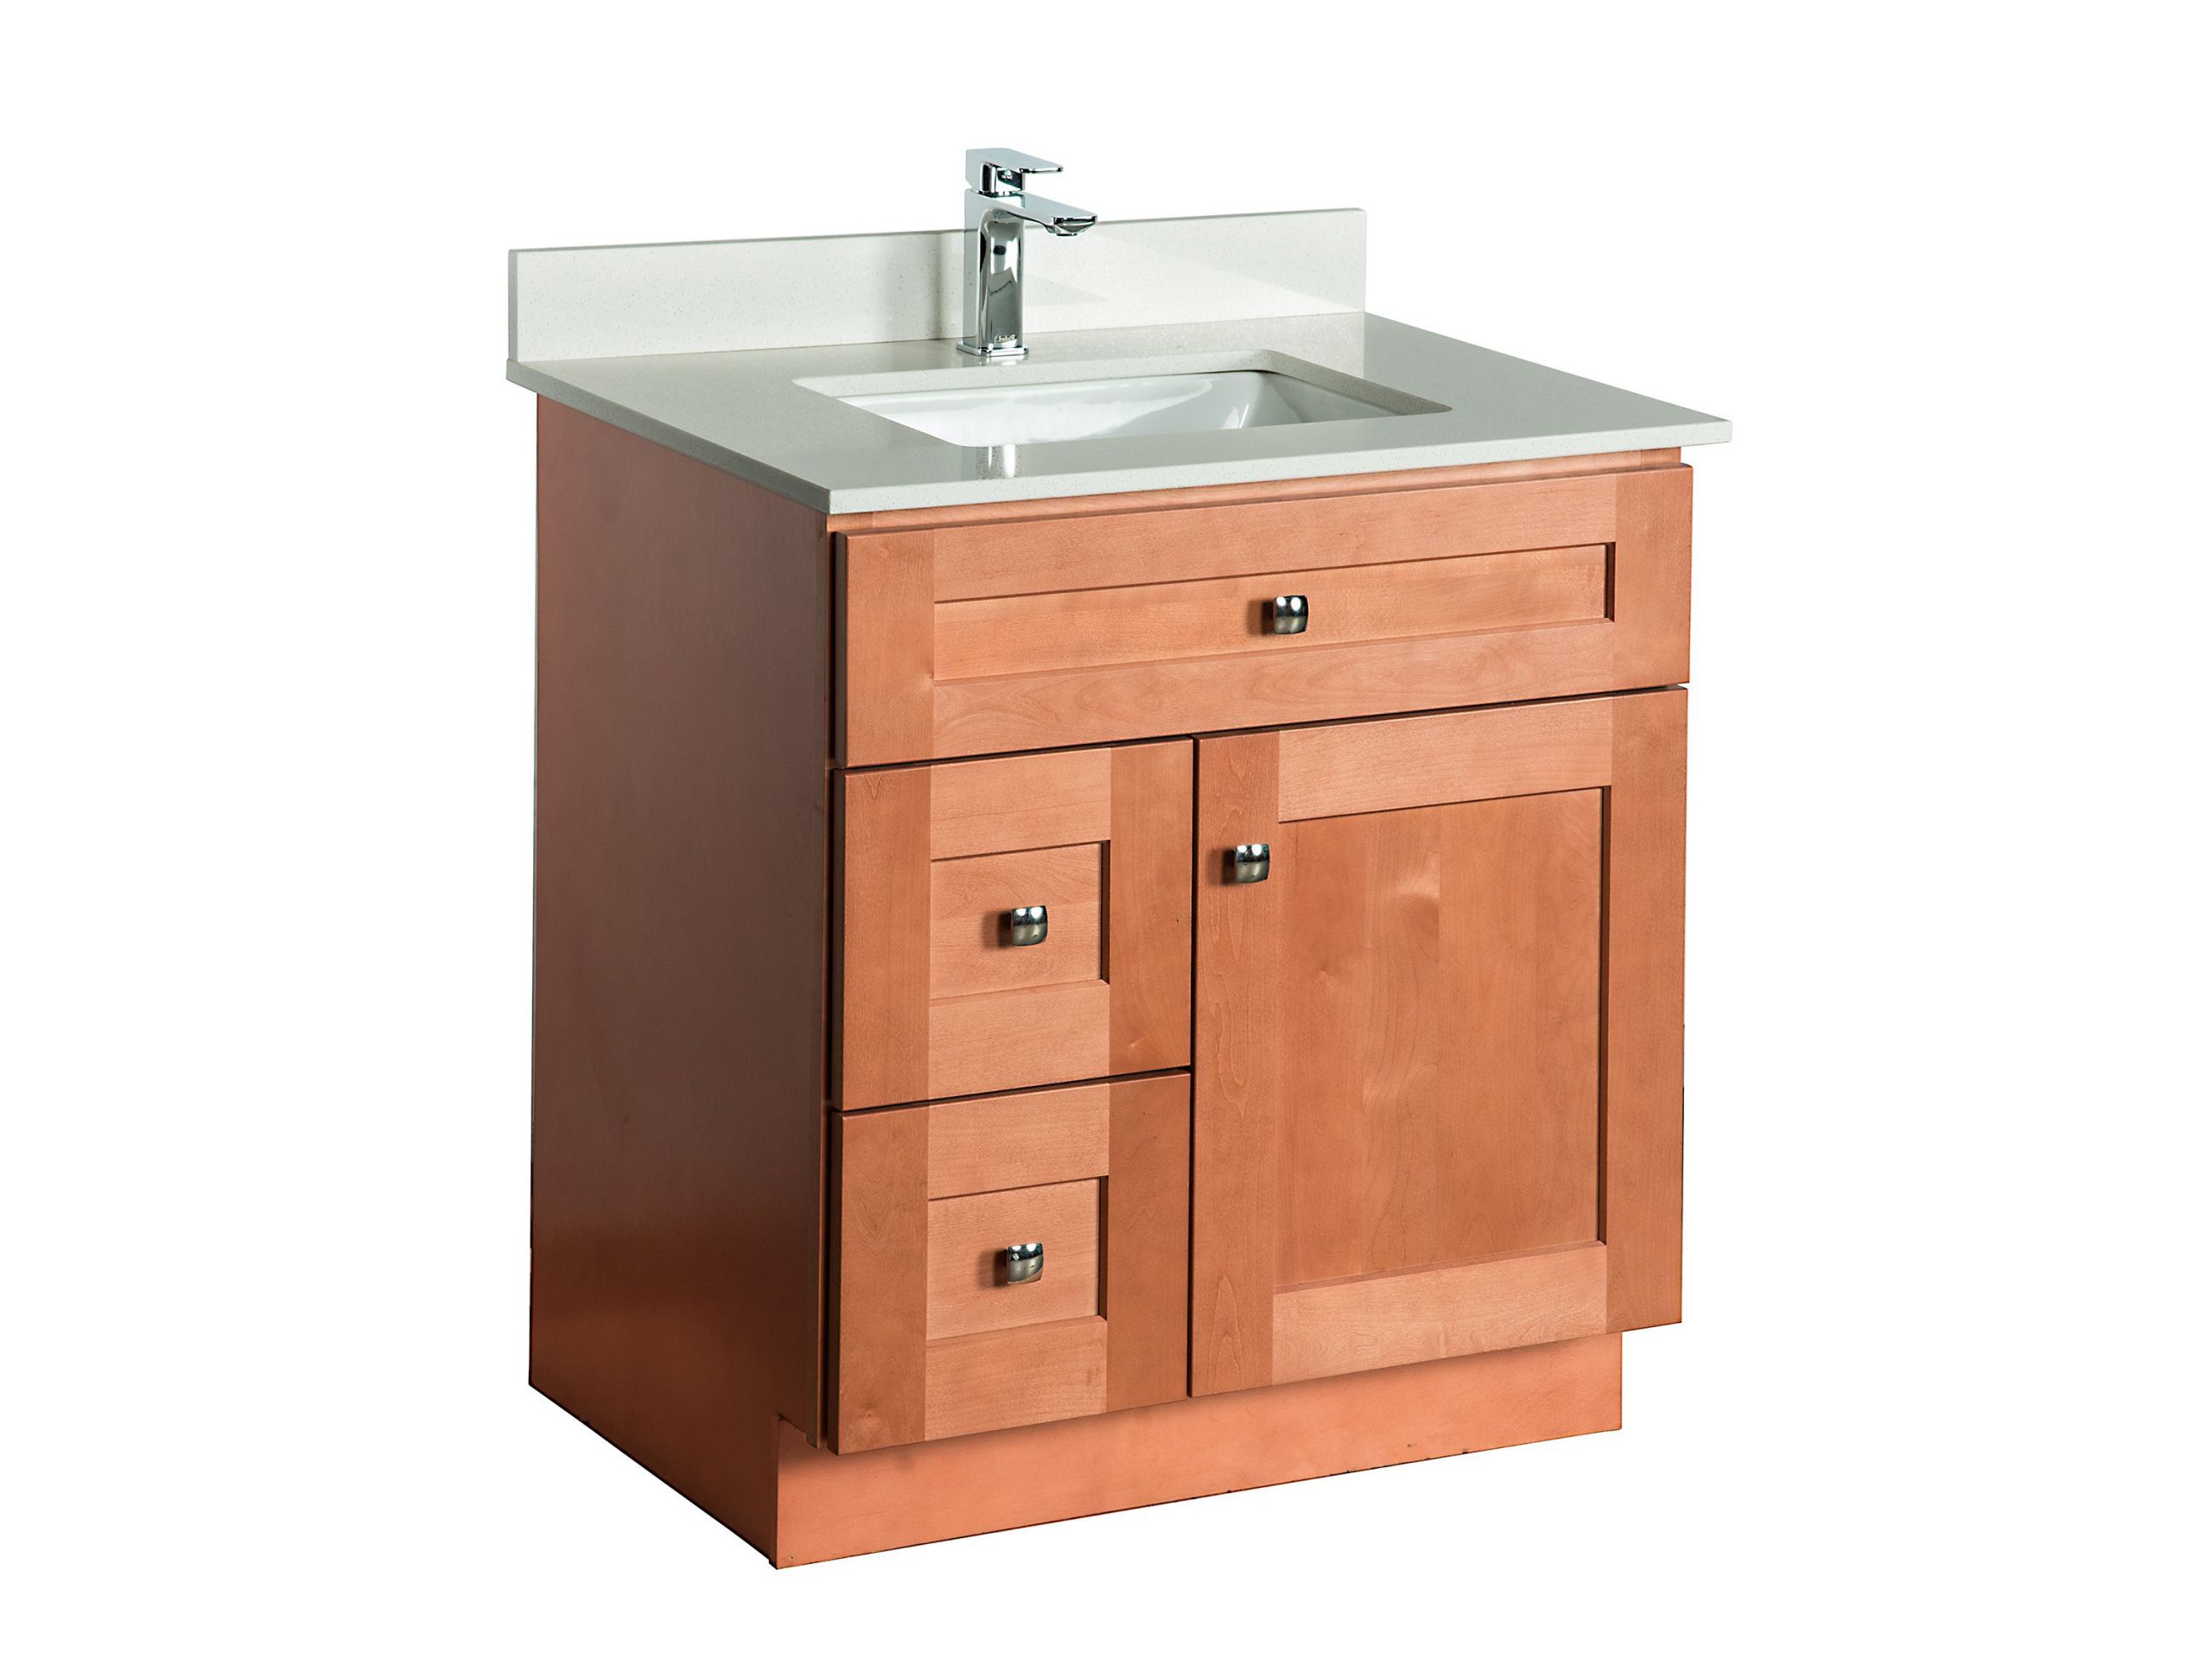 Maple Bathroom Vanity
 30 ̎ Maple Wood Bathroom Vanity in Almond bo